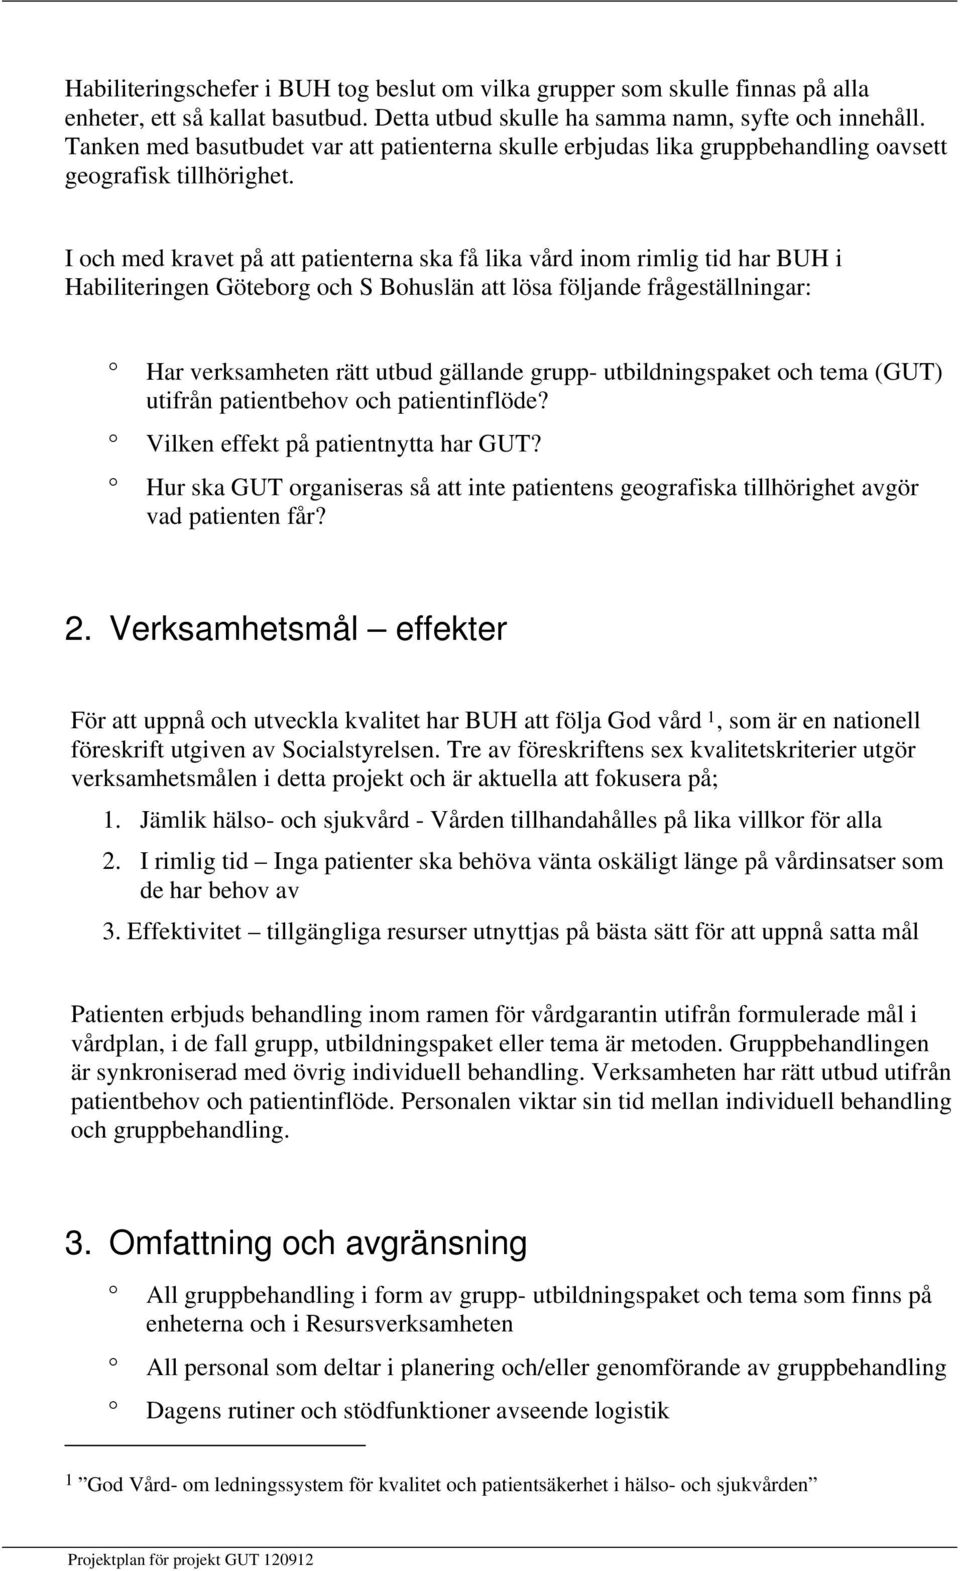 I och med kravet på att patienterna ska få lika vård inom rimlig tid har BUH i Habiliteringen Göteborg och S Bohuslän att lösa följande frågeställningar: Har verksamheten rätt utbud gällande grupp-